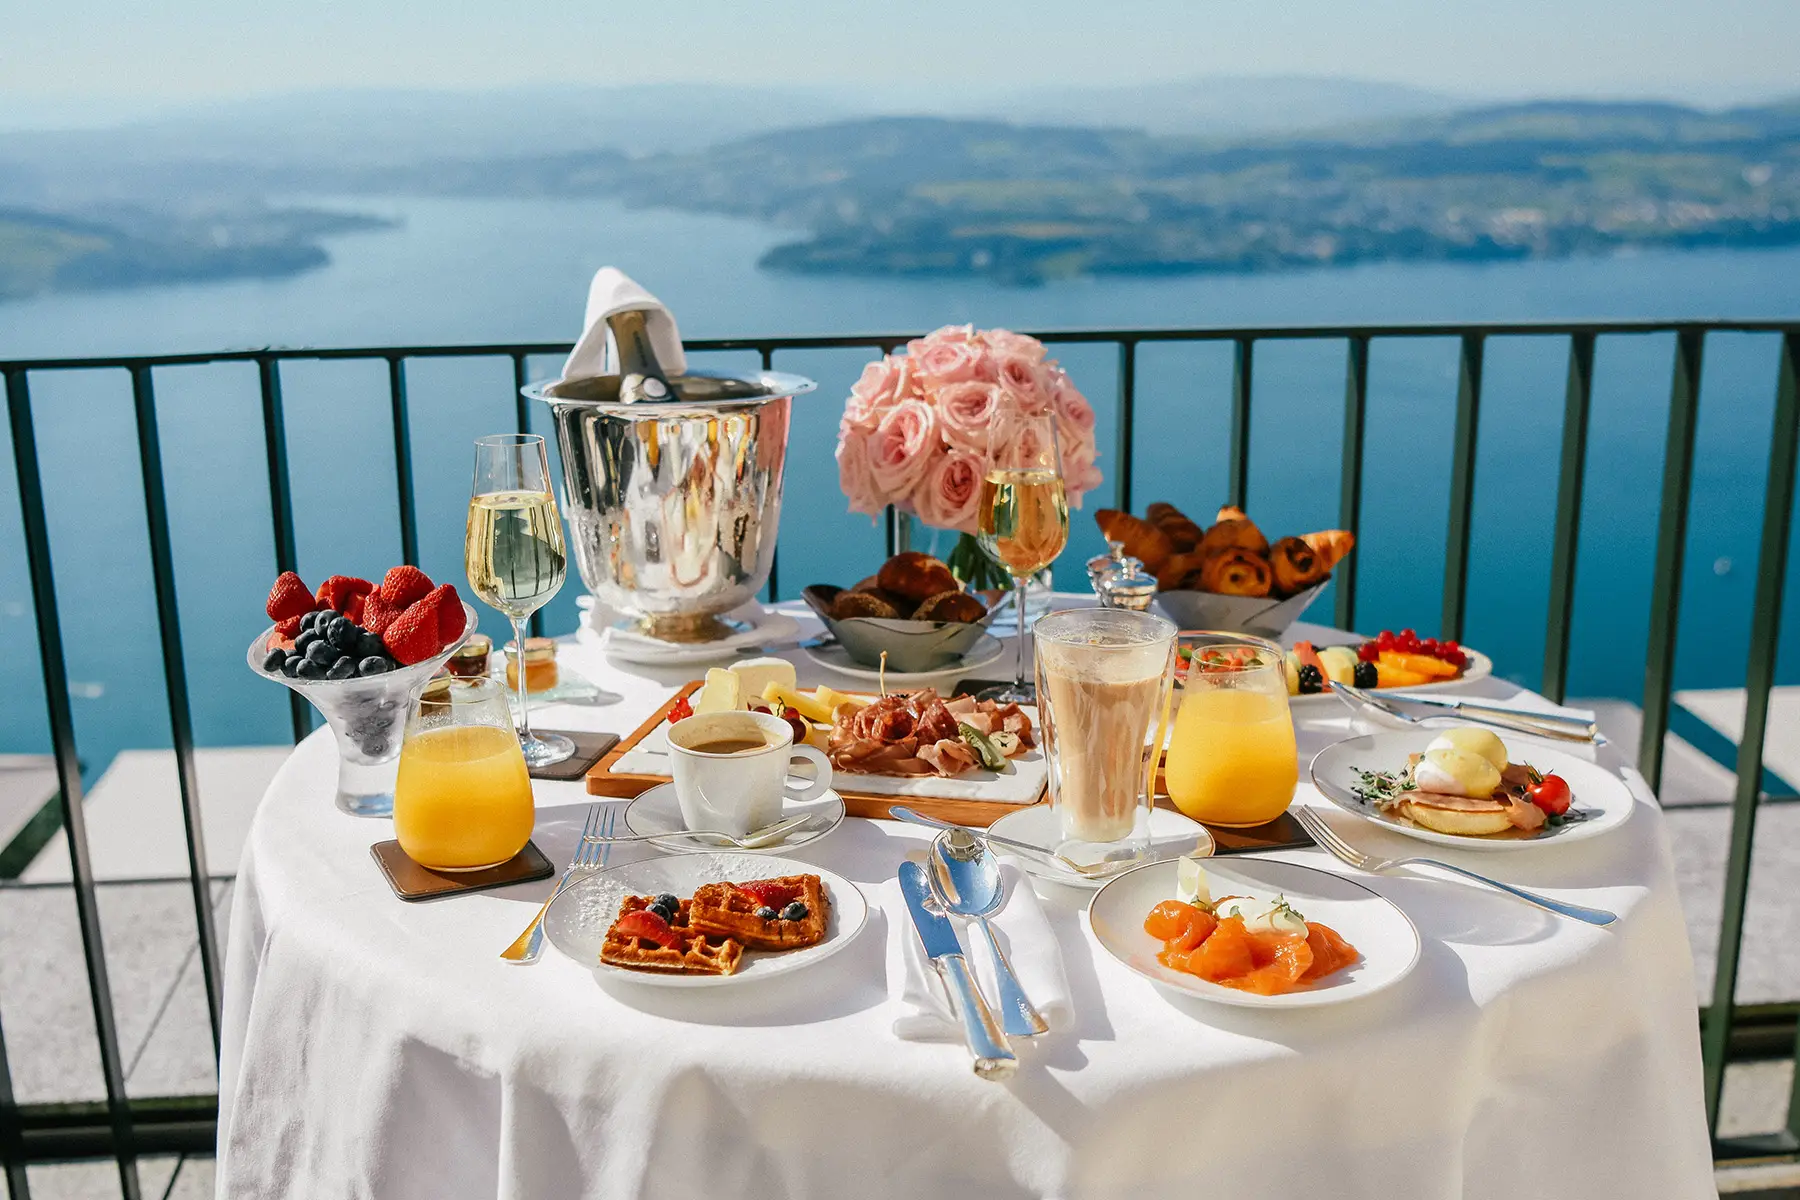 Luxurious Swiss breakfast